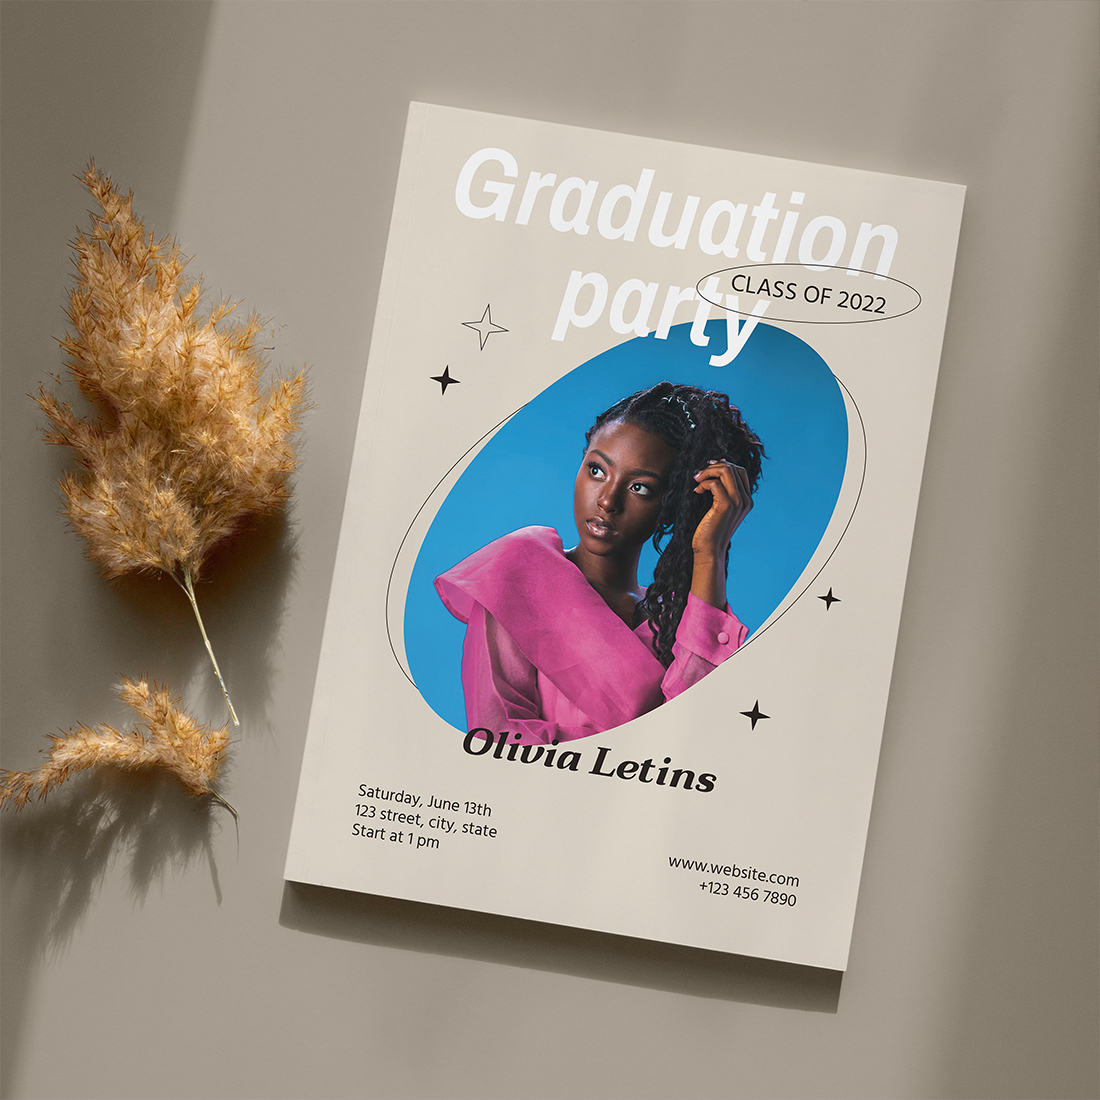 Graduation party Invitation cover.